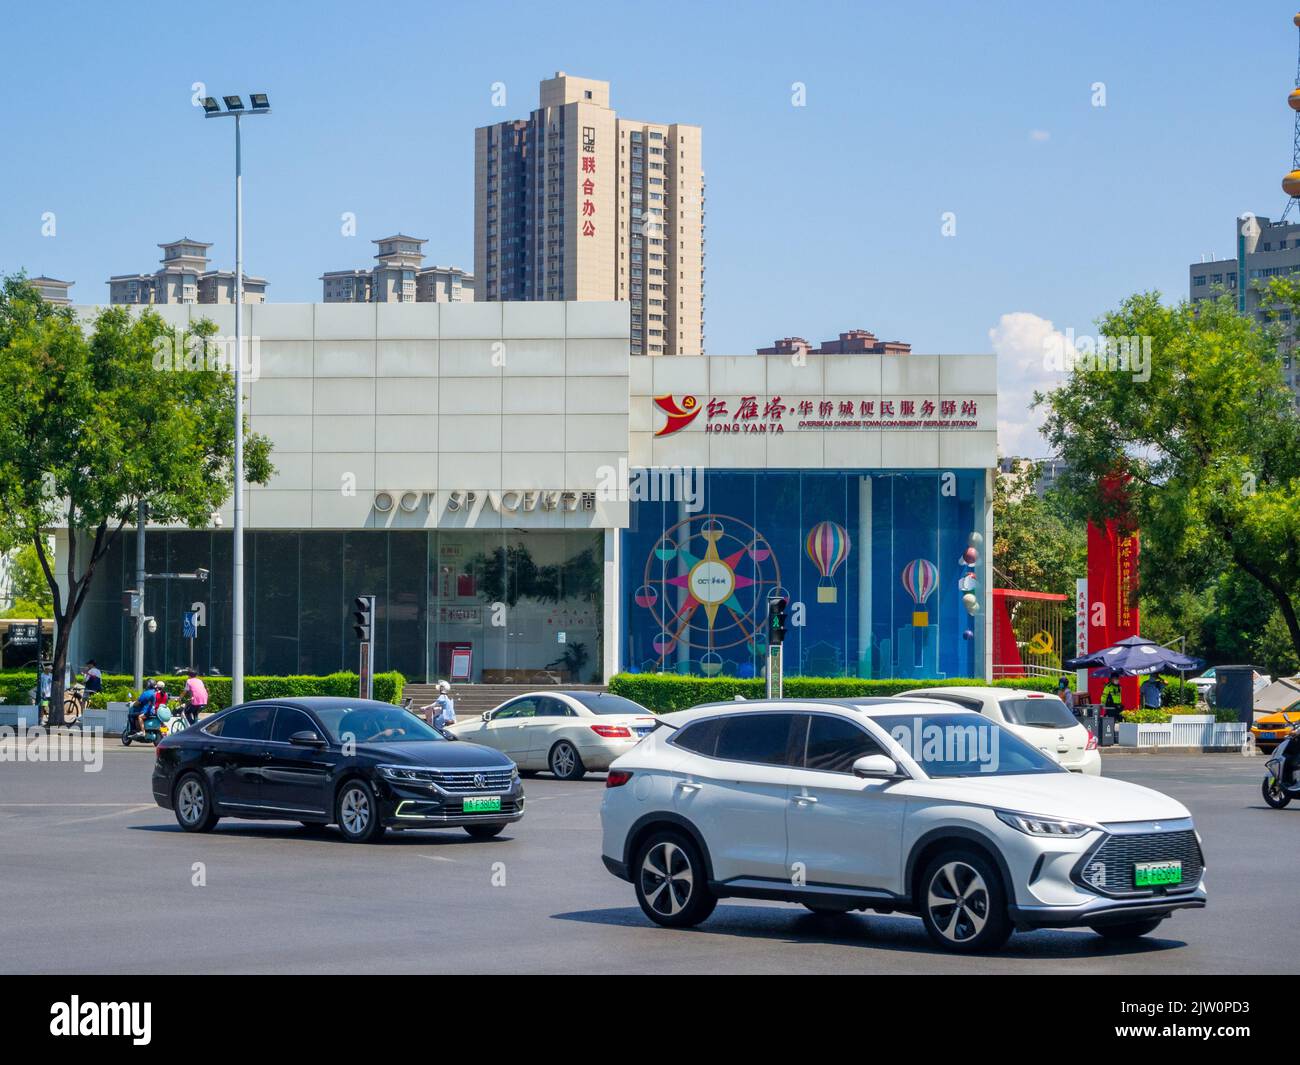 Auto moderne che guidano in un viale del centro. Un edificio d'affari con segni in lingua cinese è sullo sfondo. Foto Stock